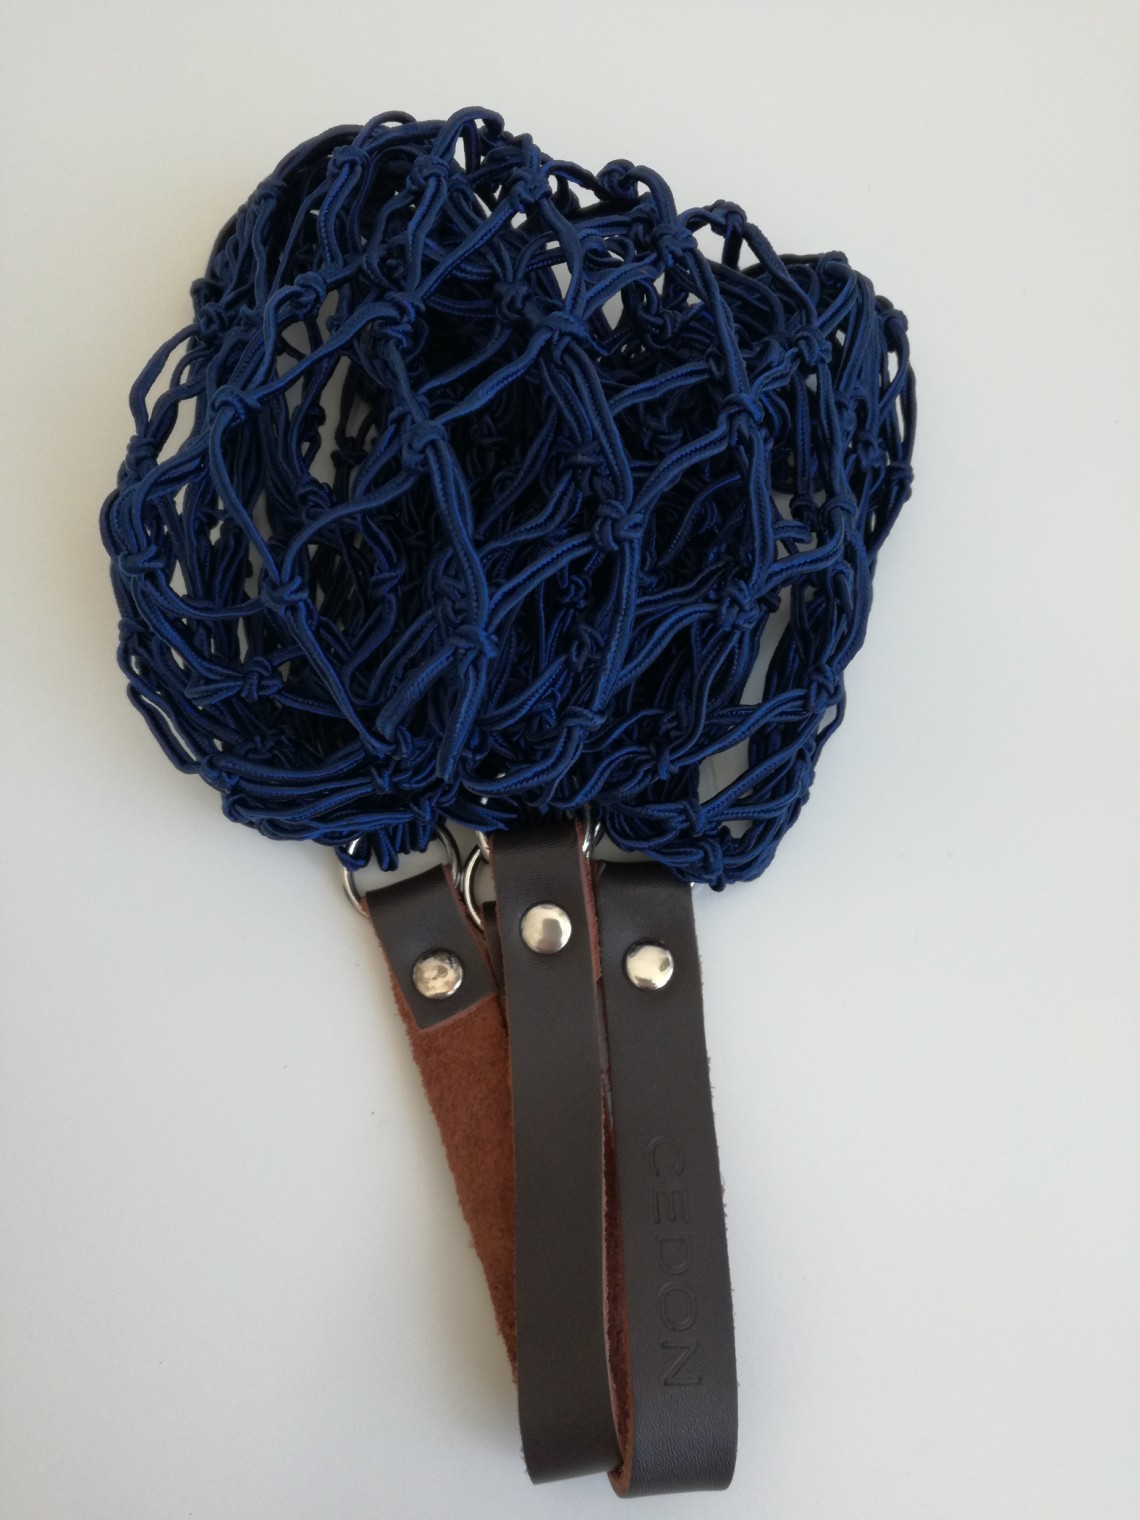 Tinklinis krepšys tamsiai mėlynos spalvos - 2011977 dunkelblau.  Kaina 12,90€. Išparduota.